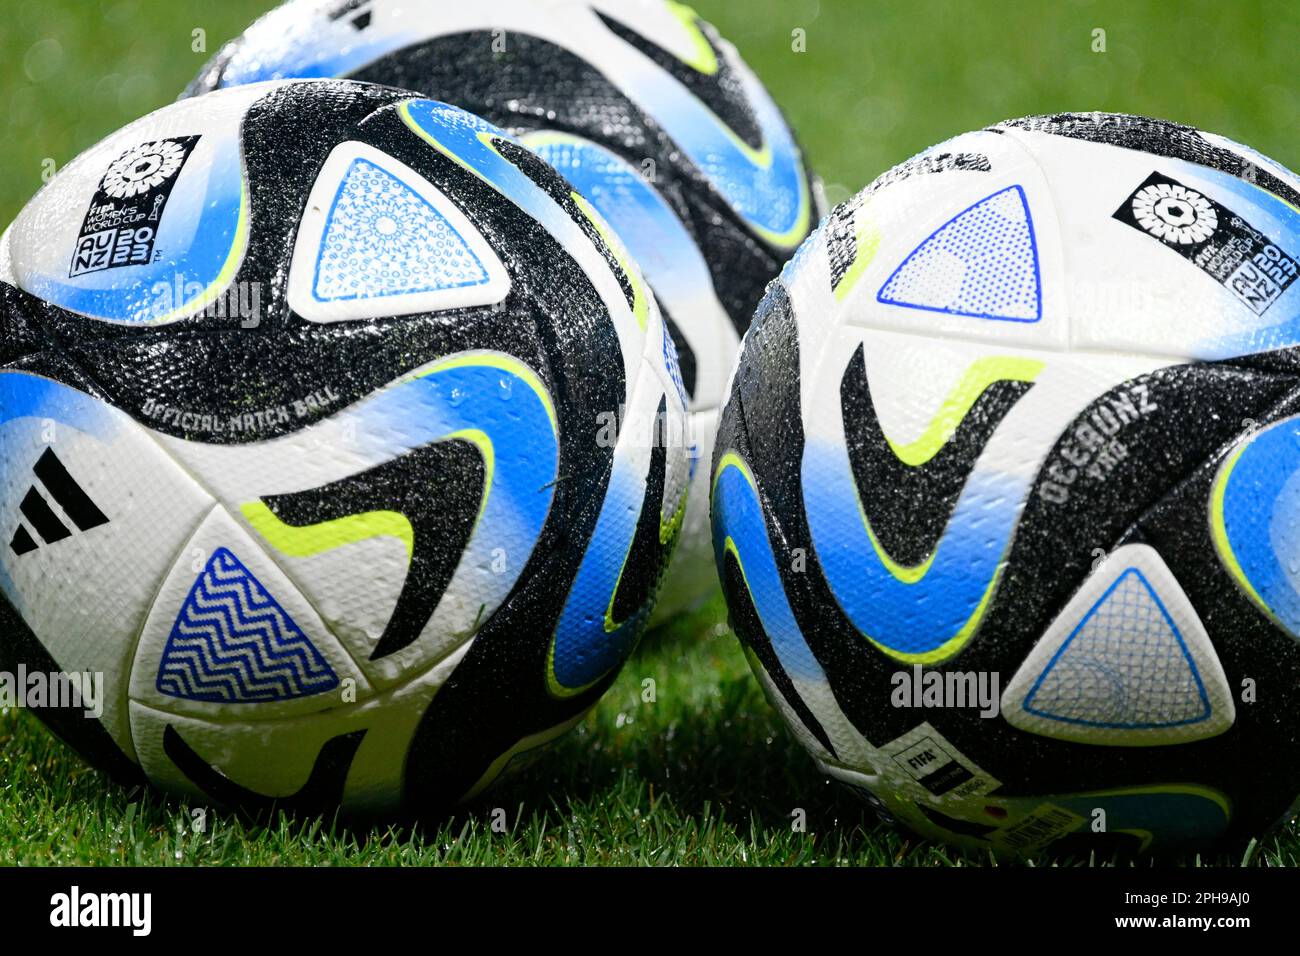 MEWA-Arena Mainz, Allemagne 25,4.2023, football: International friendly Match, Allemagne (GER) (blanc) vs PÉROU (PER) (rouge) - Adidas OCEAUNZ, ballon de match officiel de la coupe du monde des femmes de la FIFA 2023 en Nouvelle Zélande et en Australie Banque D'Images